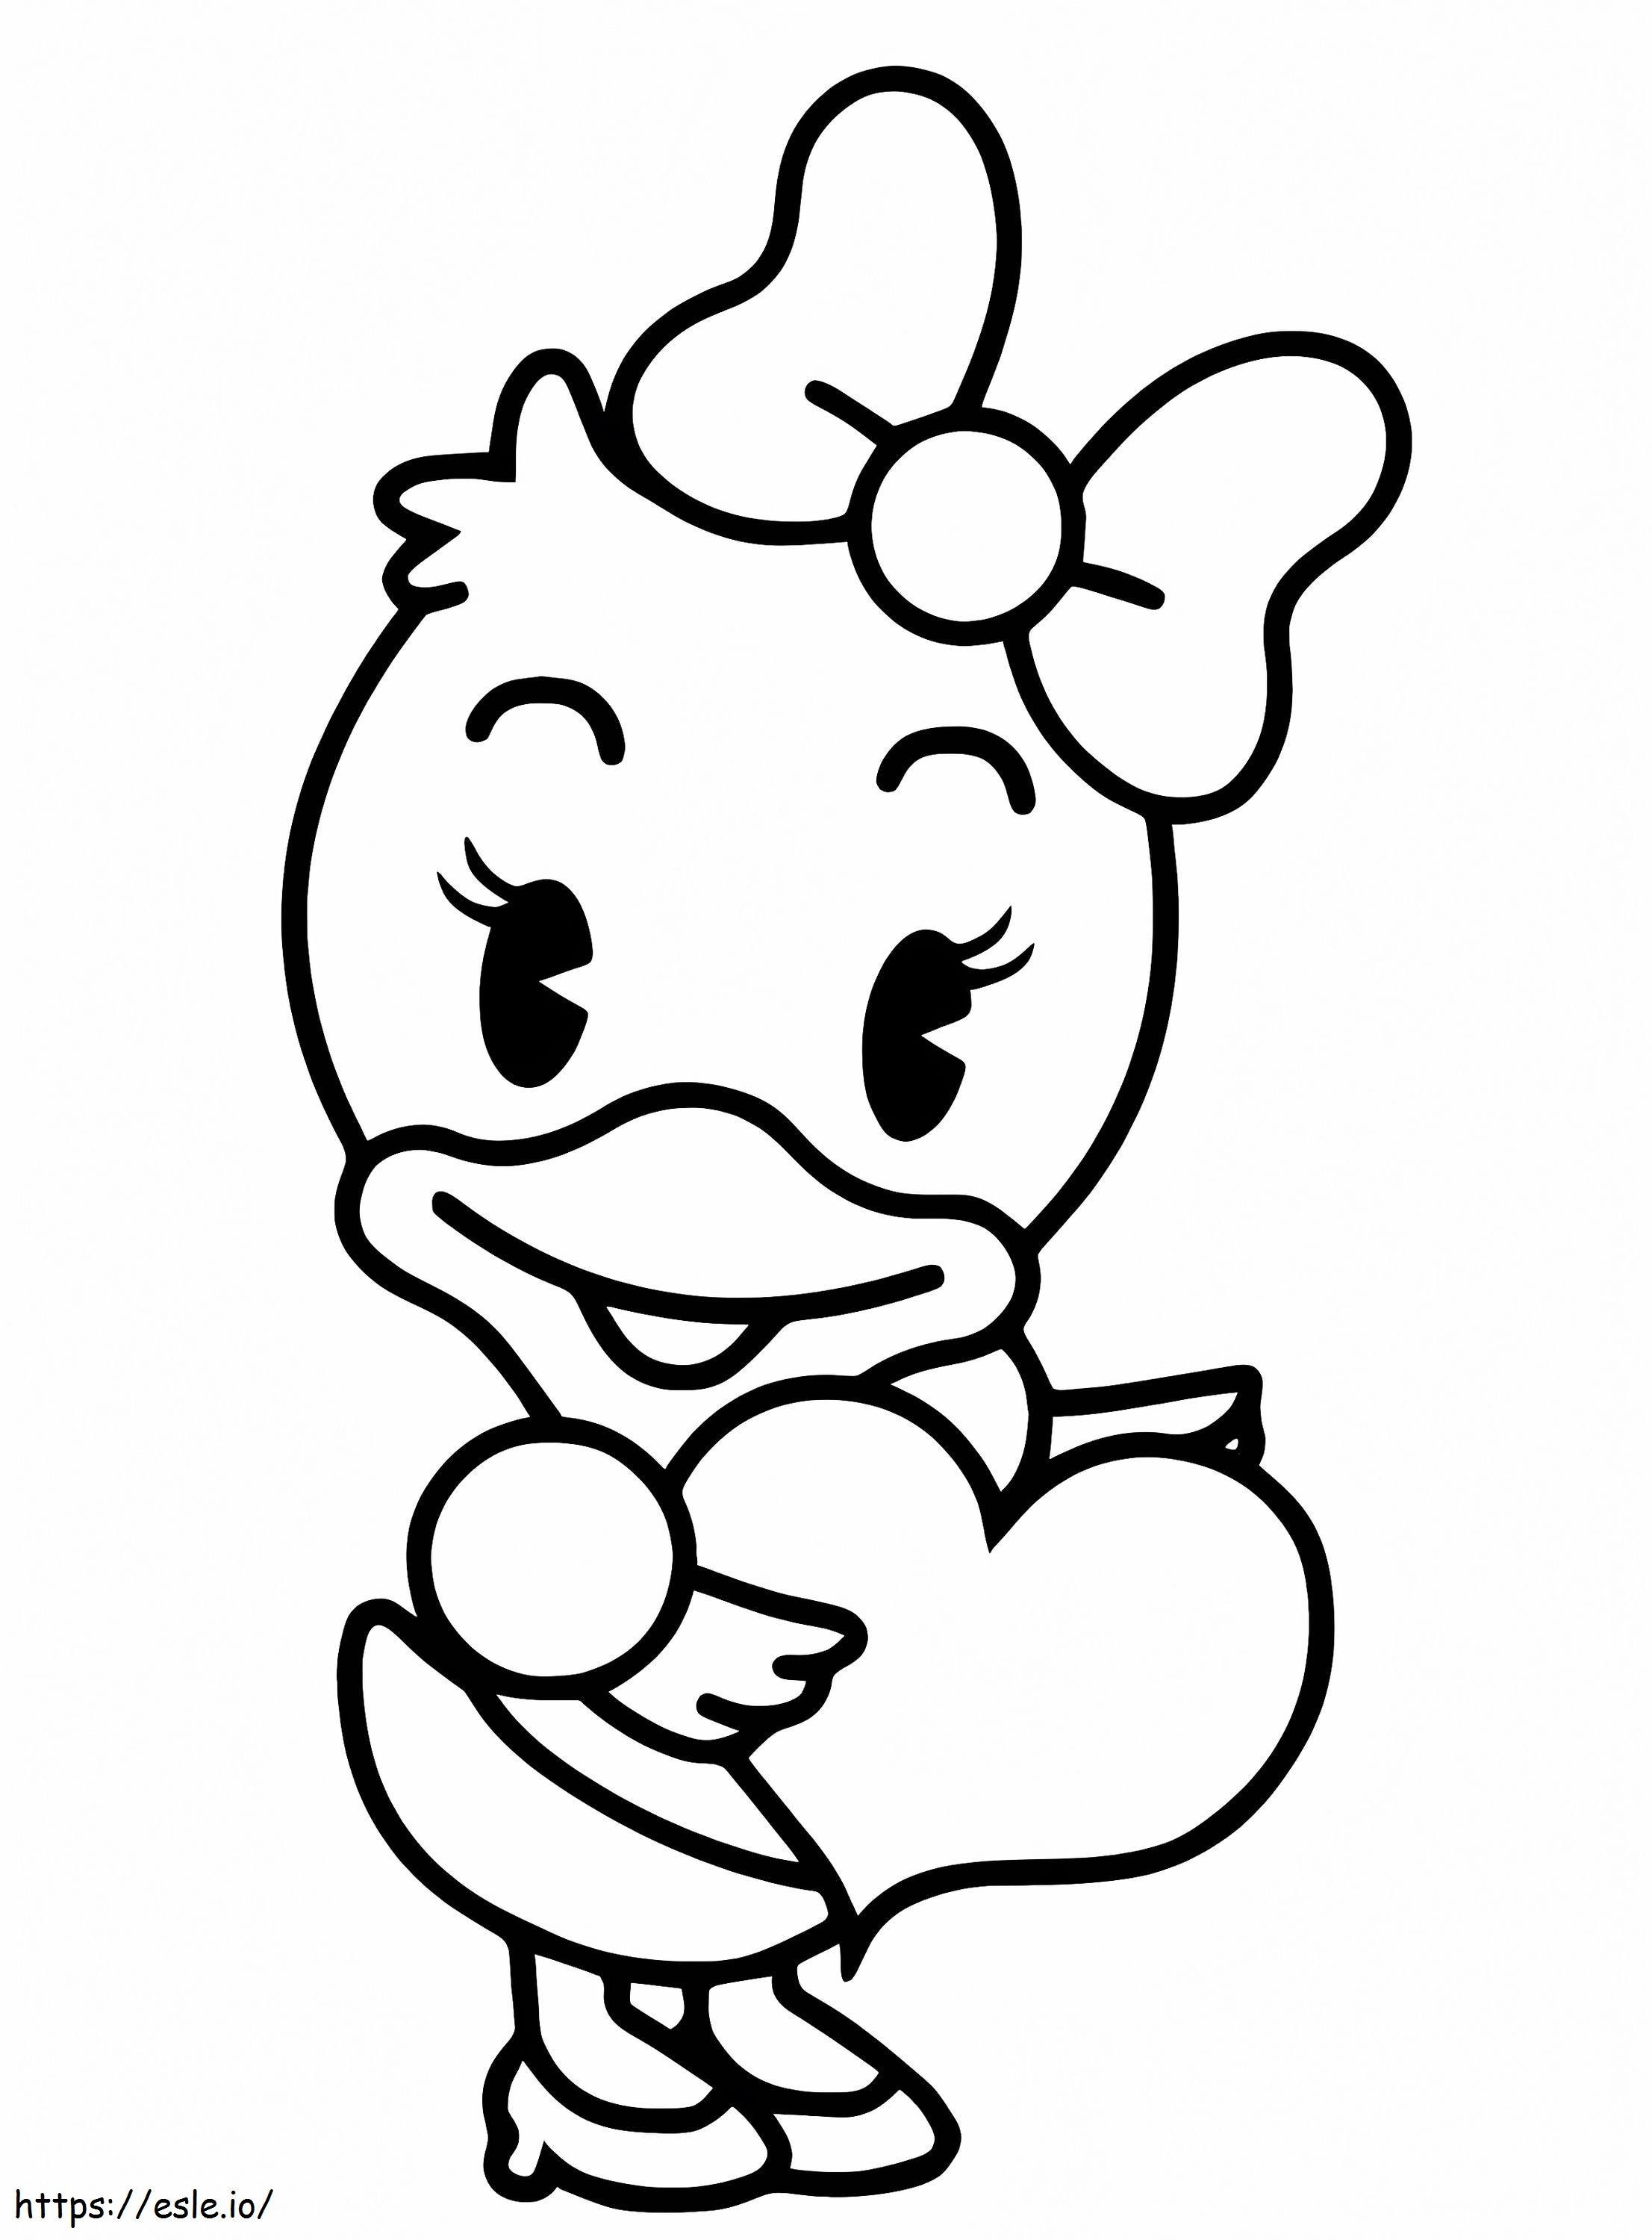 Daisy Disney Cuties coloring page